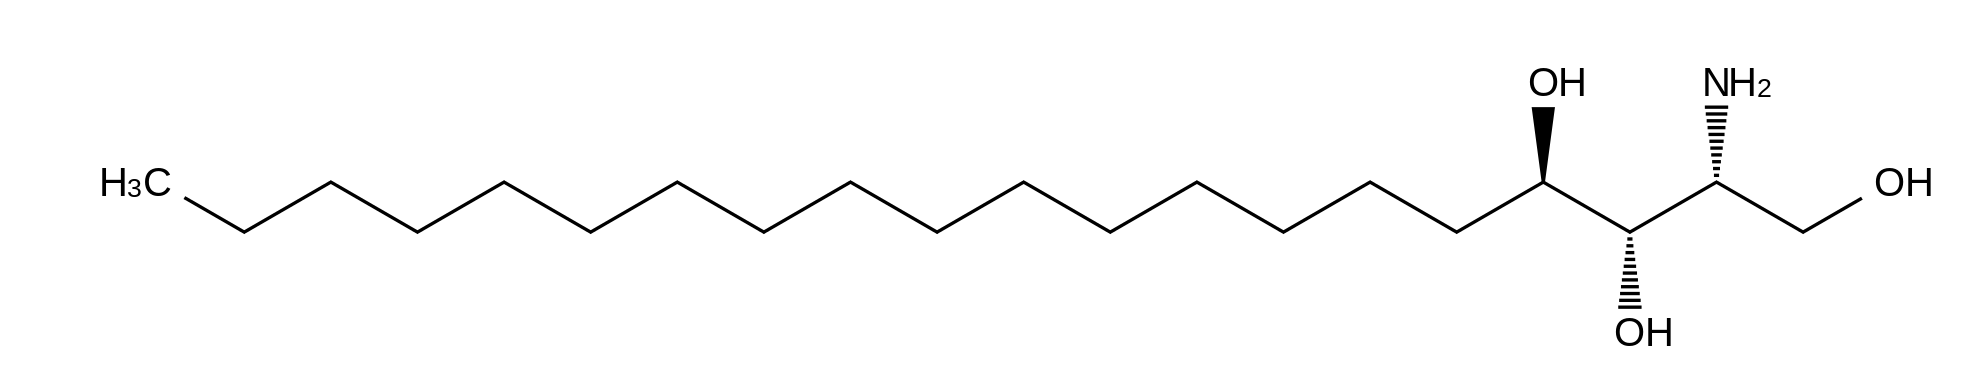 D-arabino C20-Phytosphingosine